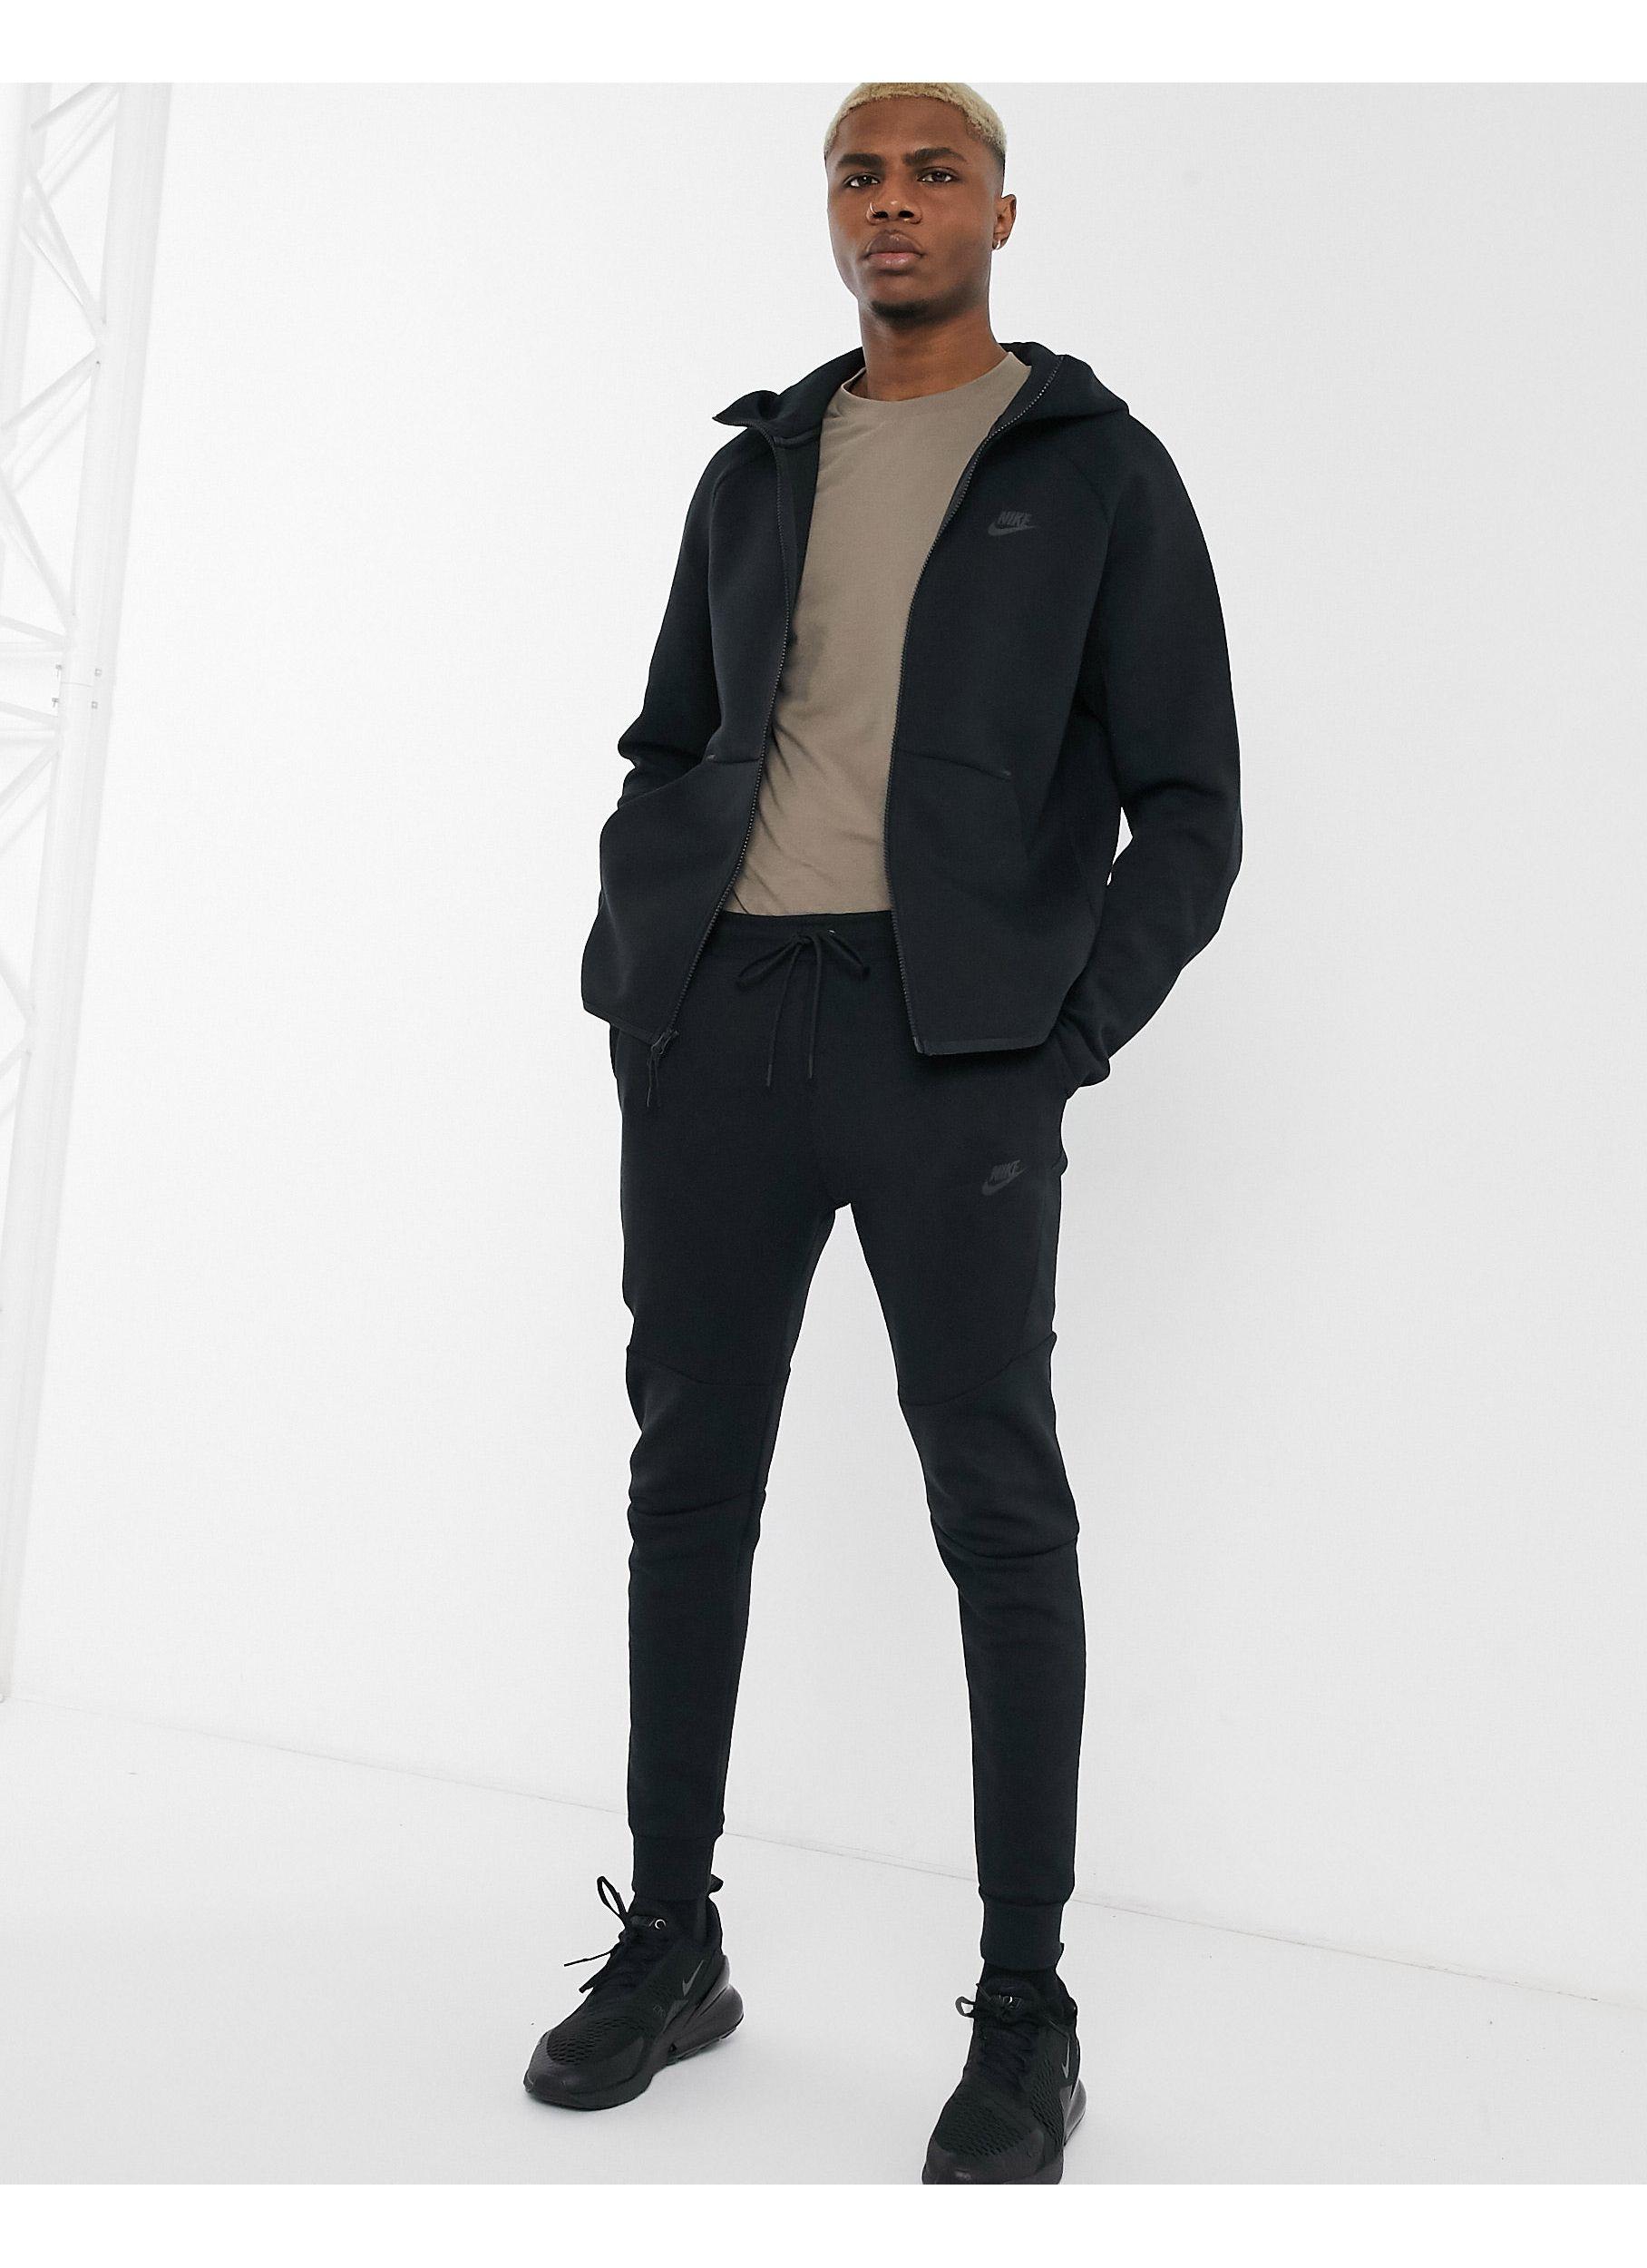 Nike Tech Fleece Slim Fit Sweatpants in Black for Men - Lyst